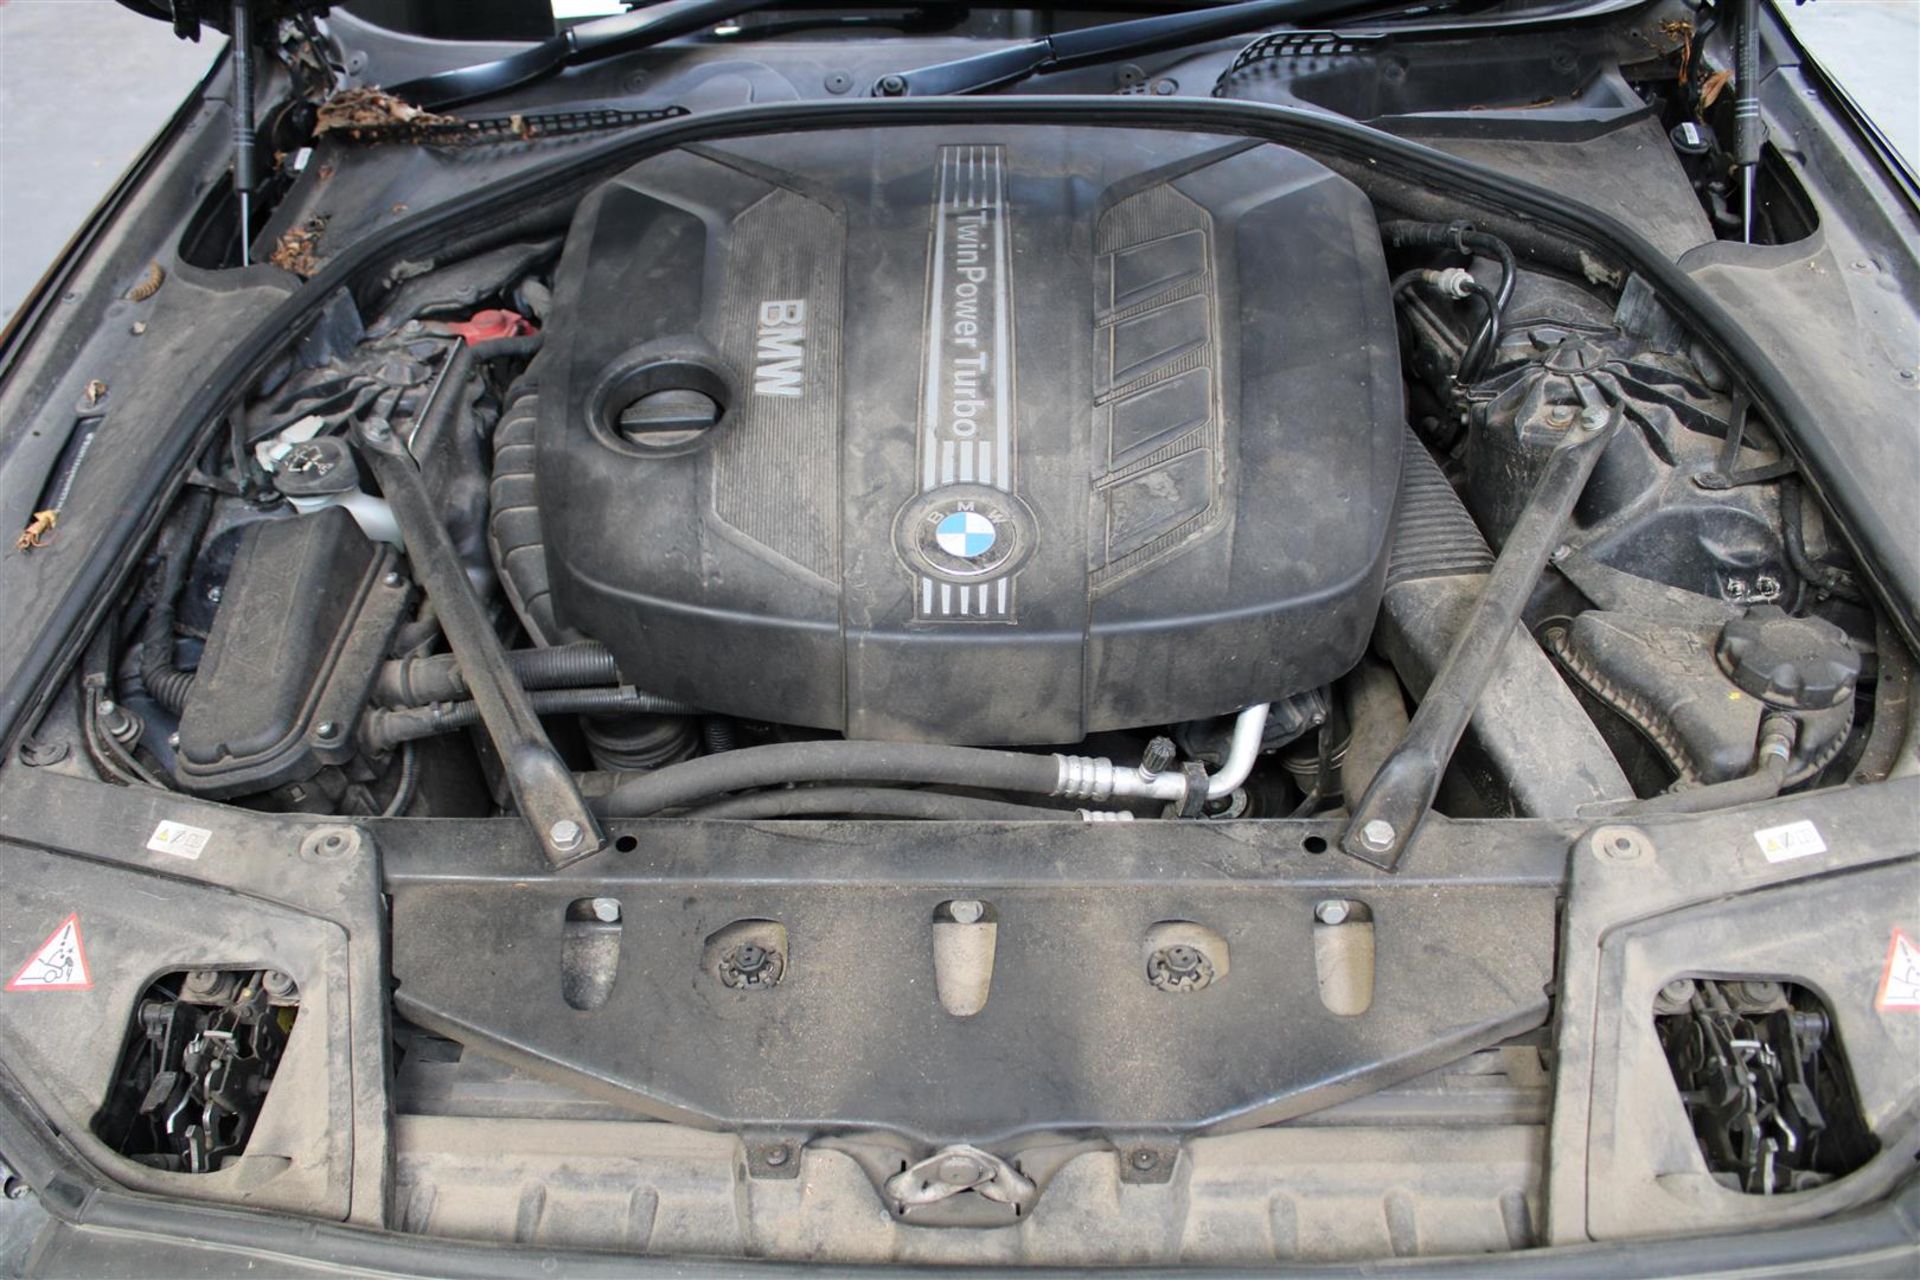 63 13 BMW 520D SE Auto - Image 29 of 40